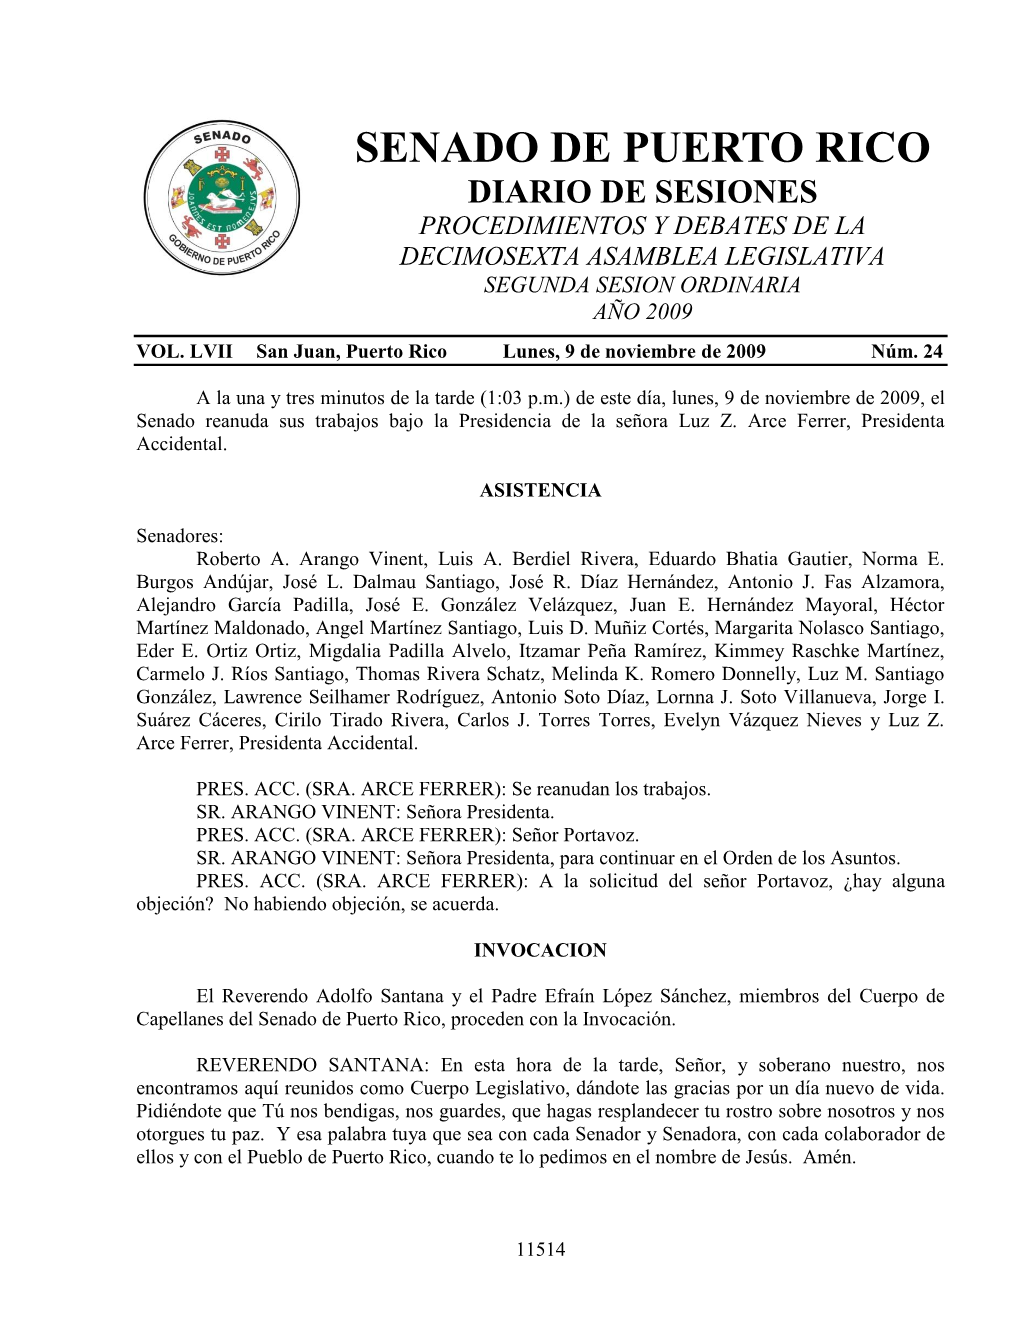 Senado De Puerto Rico Diario De Sesiones Procedimientos Y Debates De La Decimosexta Asamblea Legislativa Segunda Sesion Ordinaria Año 2009 Vol